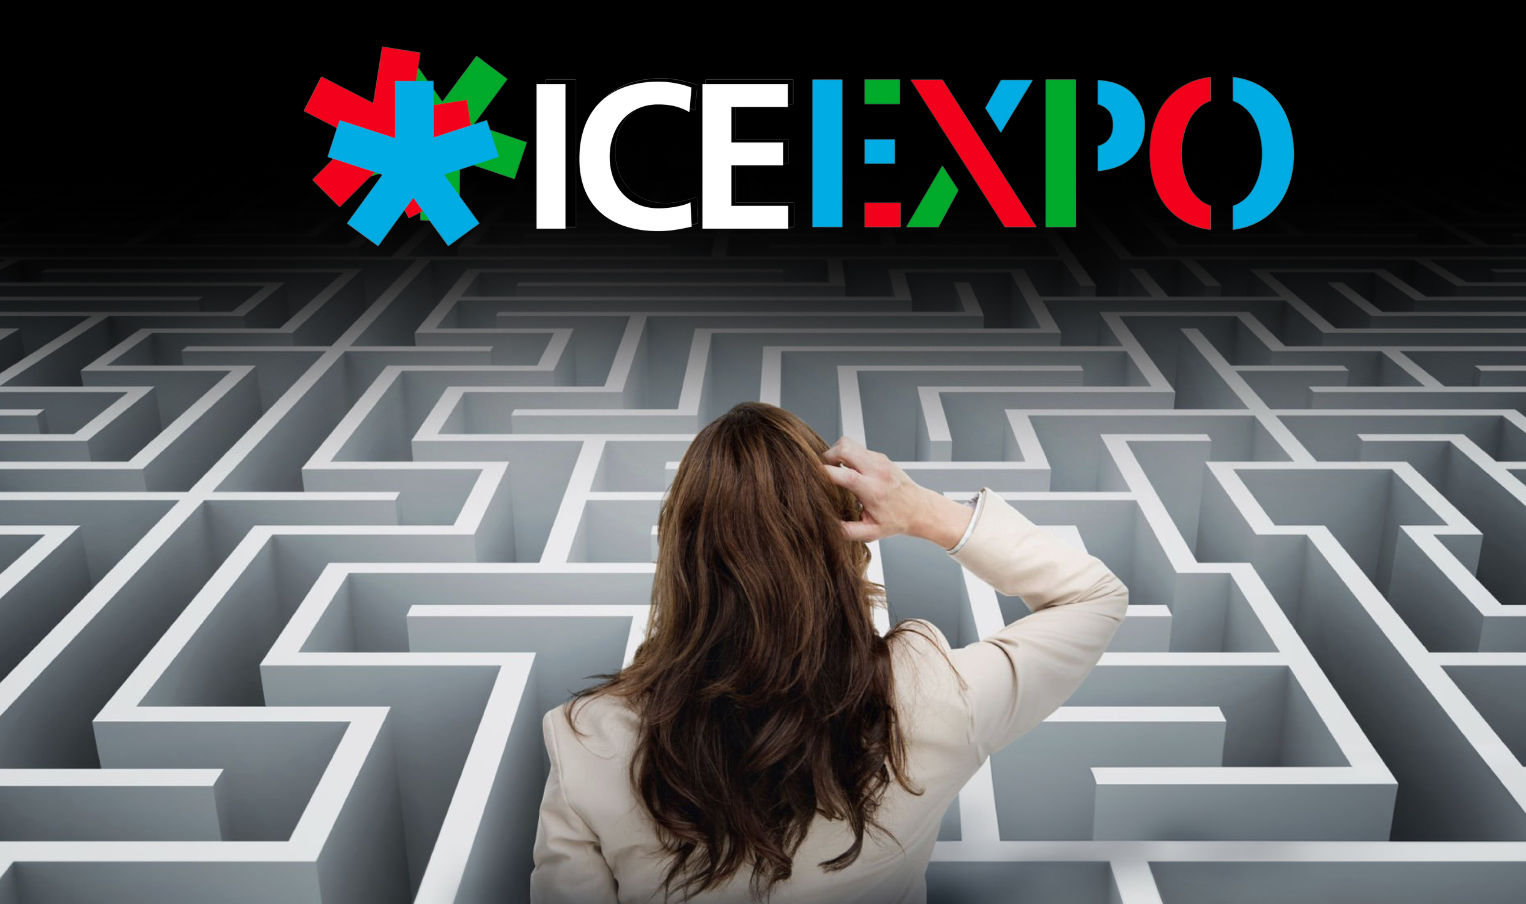 ICE EXPO